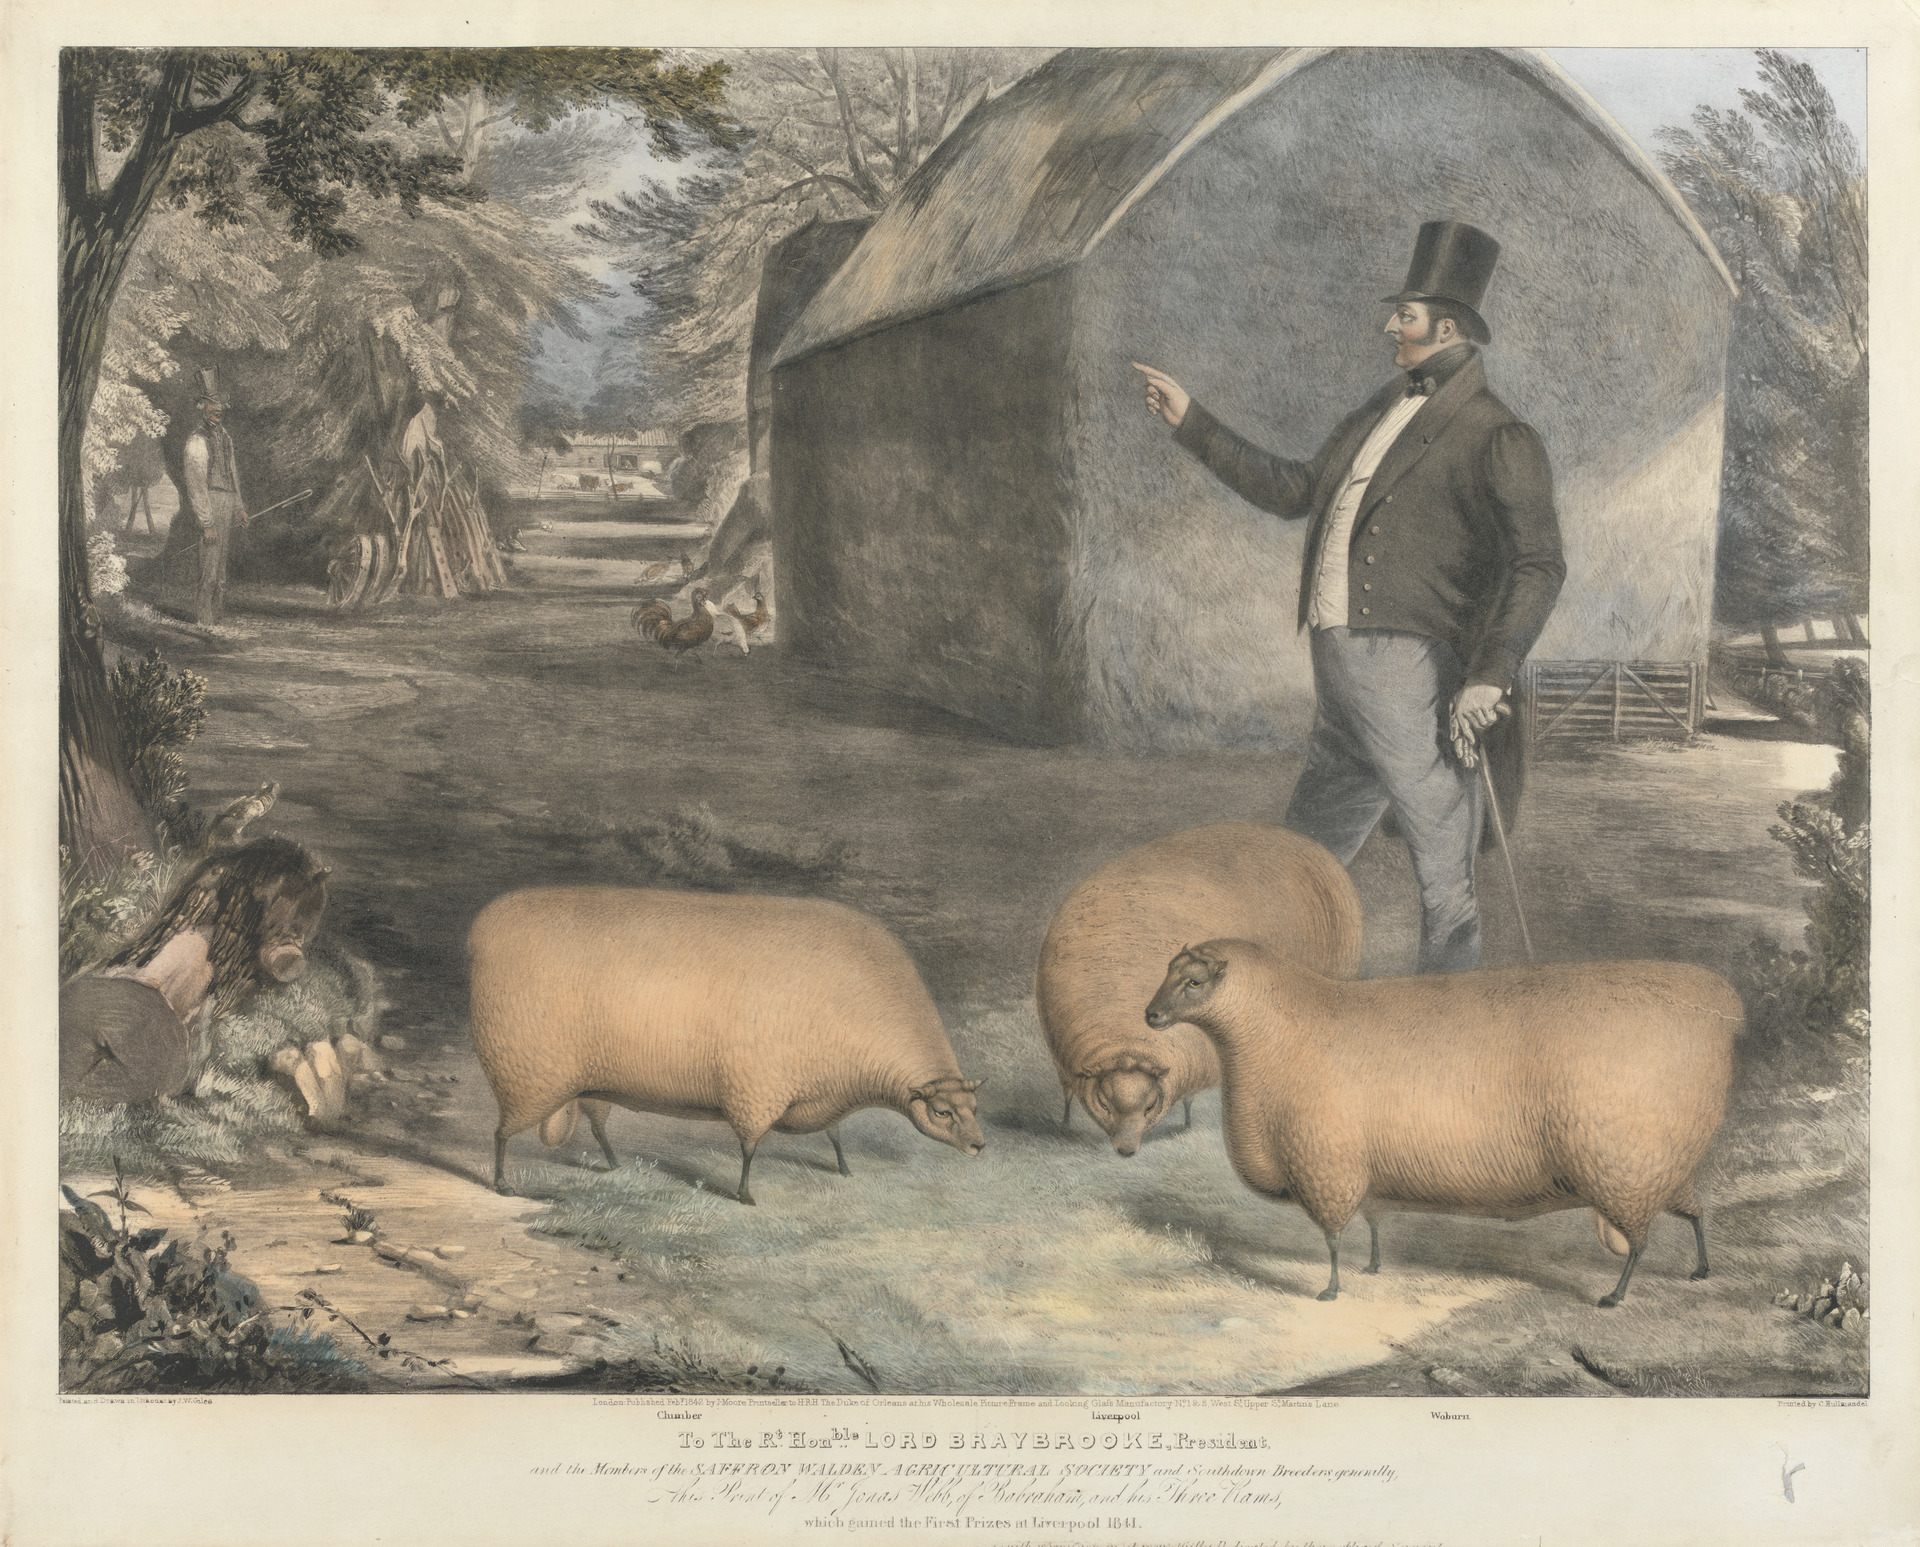 Фермер 19 века в США